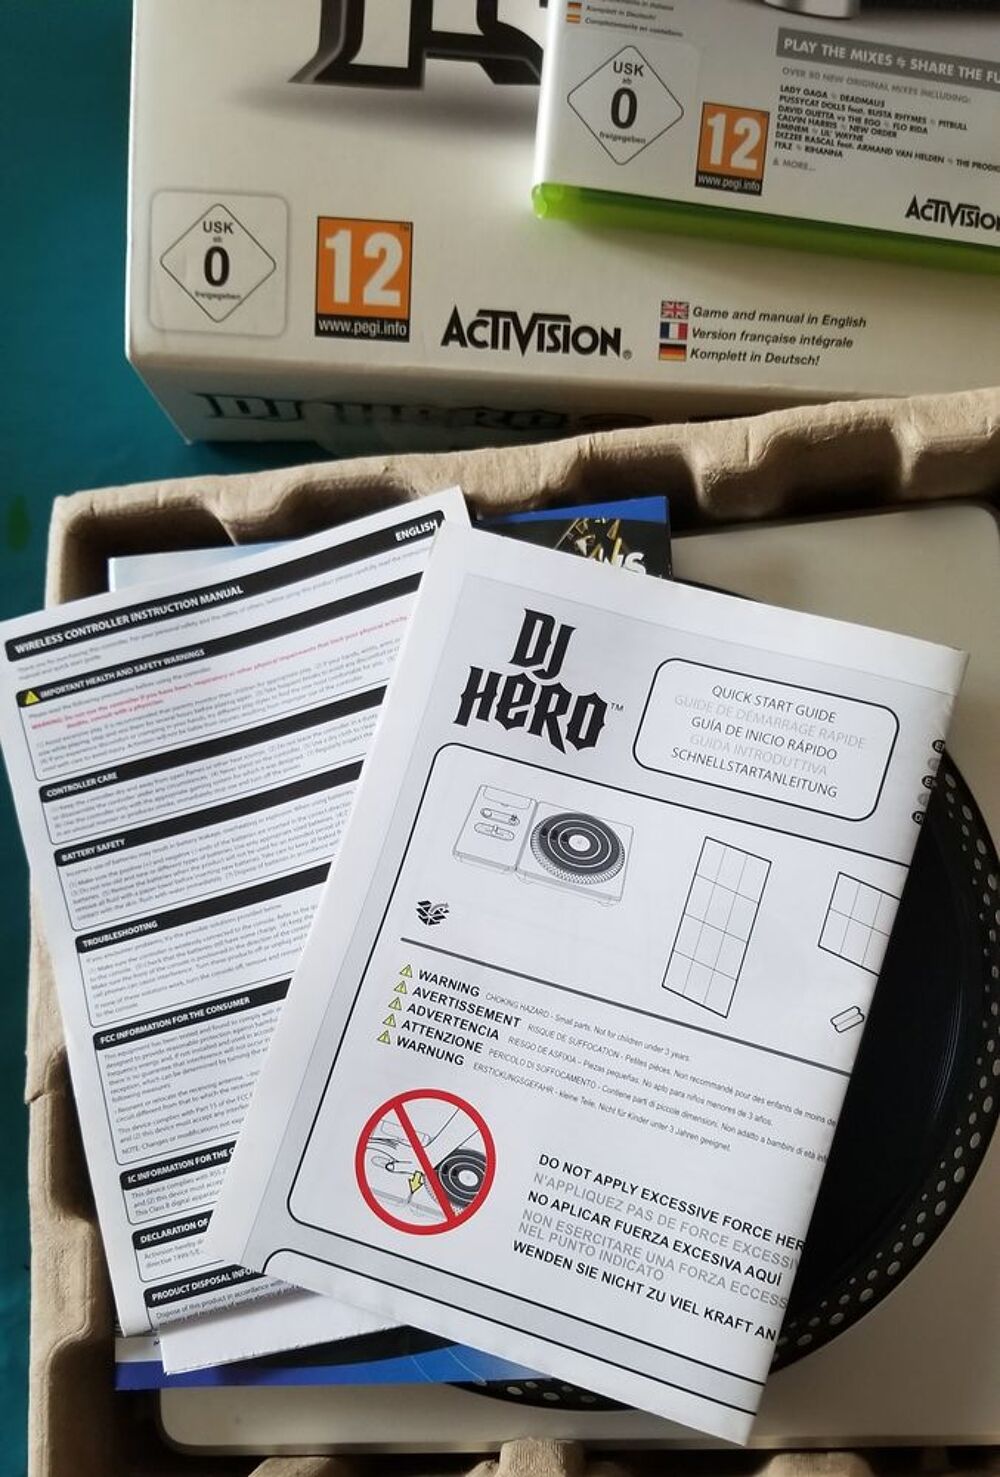 DJ Hero 2 pour xbox360 + 2 jeux dj hero Consoles et jeux vidos